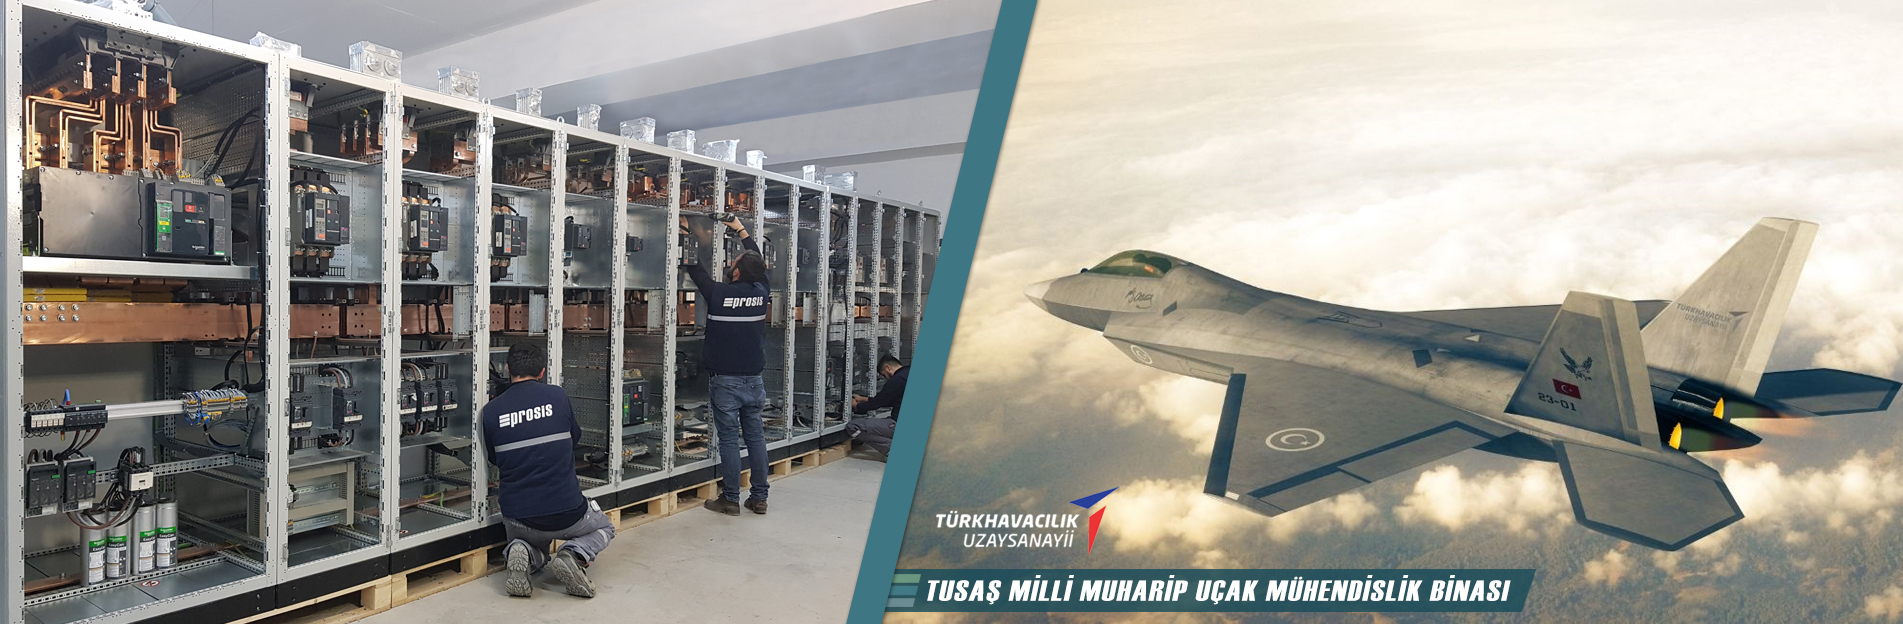 TAI Milli Muharip Uçak Mühendislik Binası Panoları - Prosis